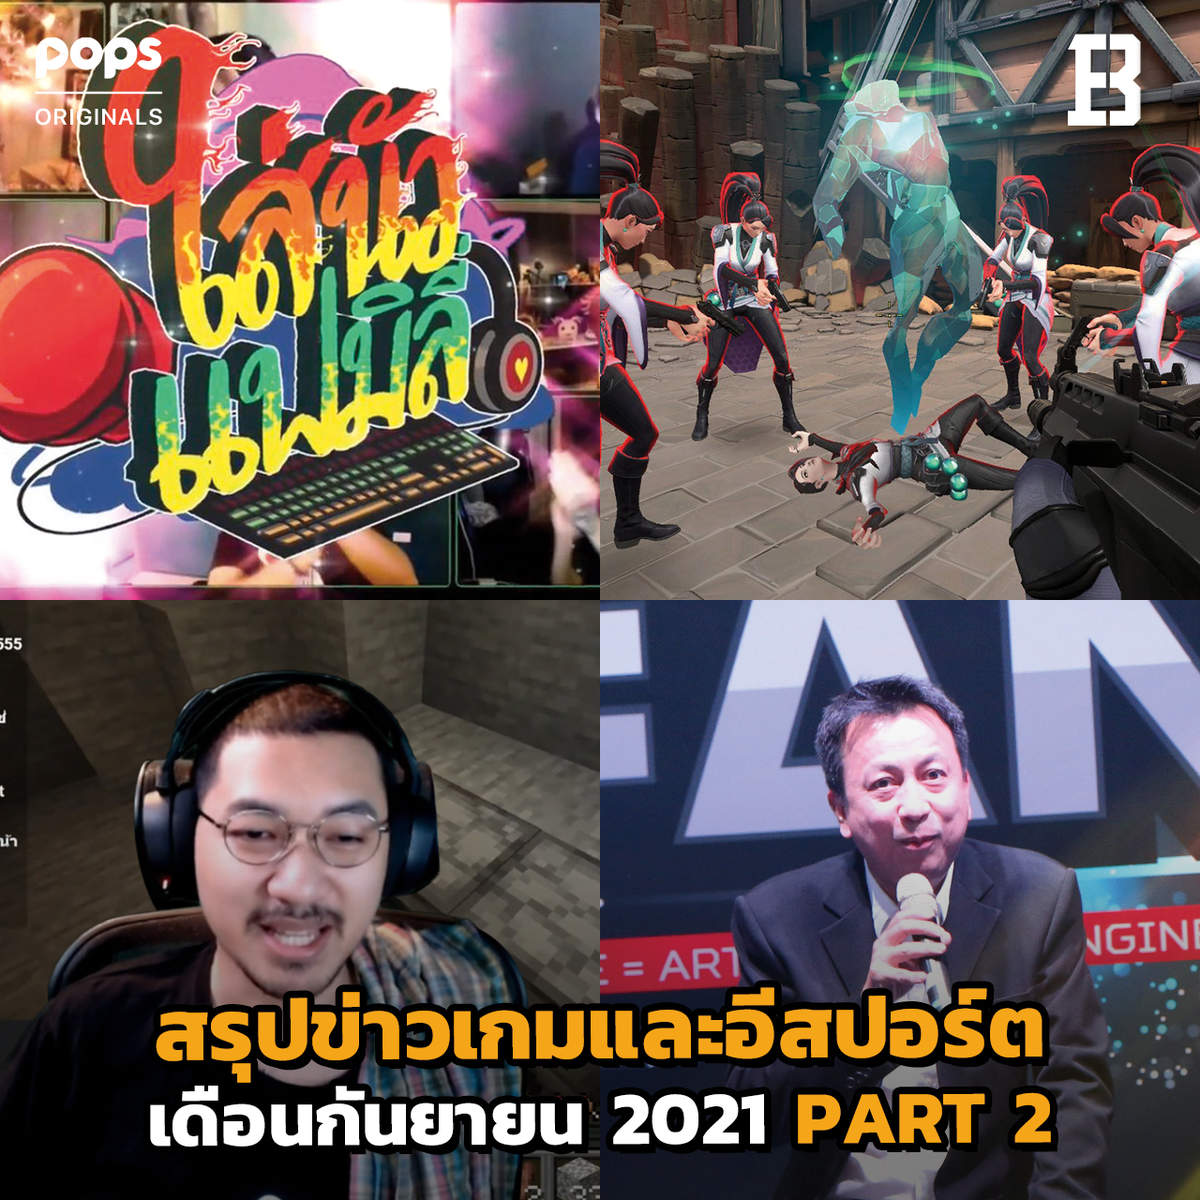 สรุปข่าวเกมและอีสปอร์ต | Bangkok Esports News